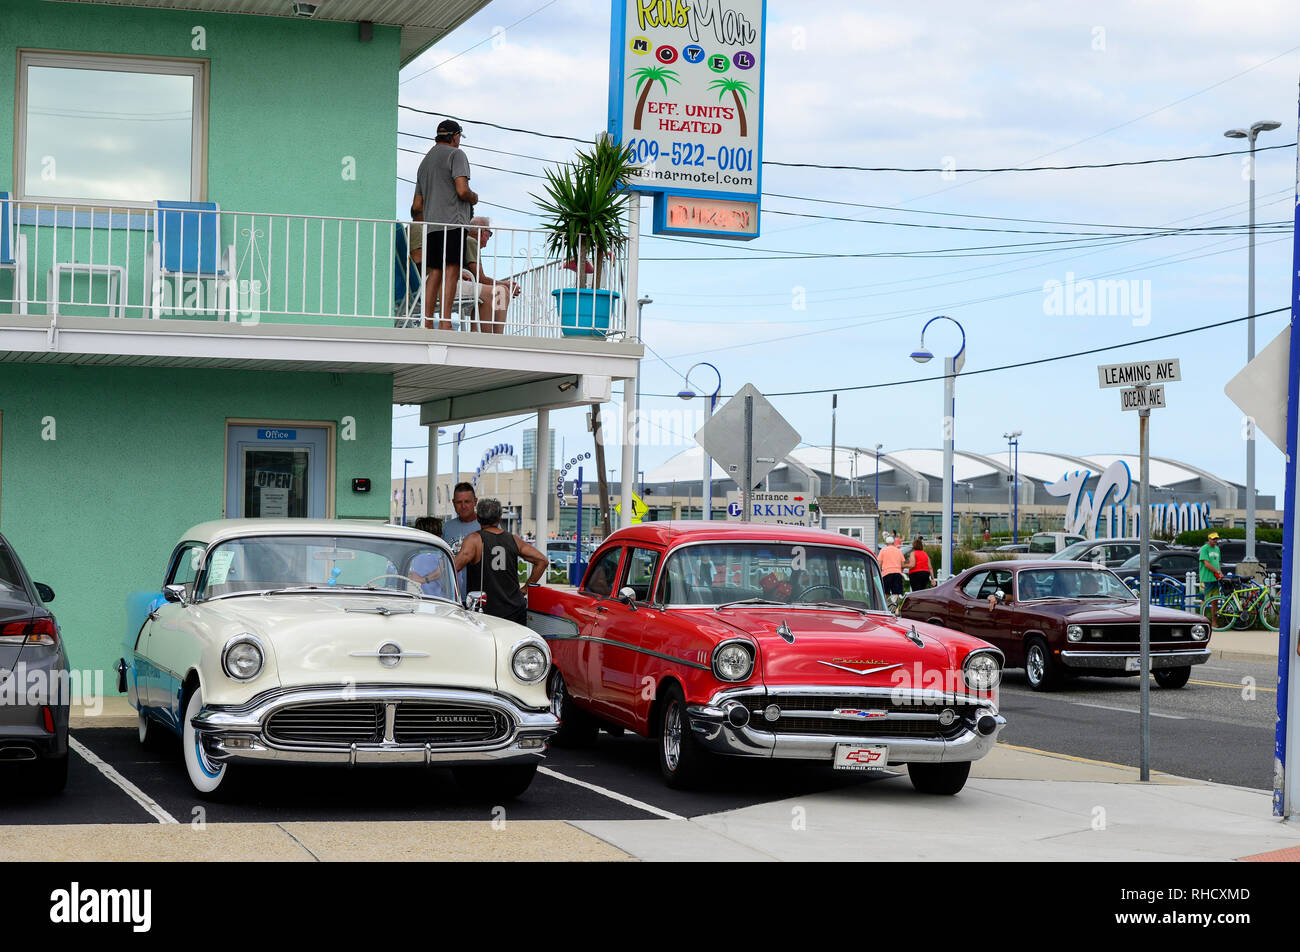 Los Estados Unidos, Nueva Jersey, Wildwood, desfile de coches clásicos, GM General Motors Chevrolet Bel Air en lugar de aparcamiento del Motel Rusmar en Ocean Ave, podría estar en la Habana Cuba demasiado Foto de stock